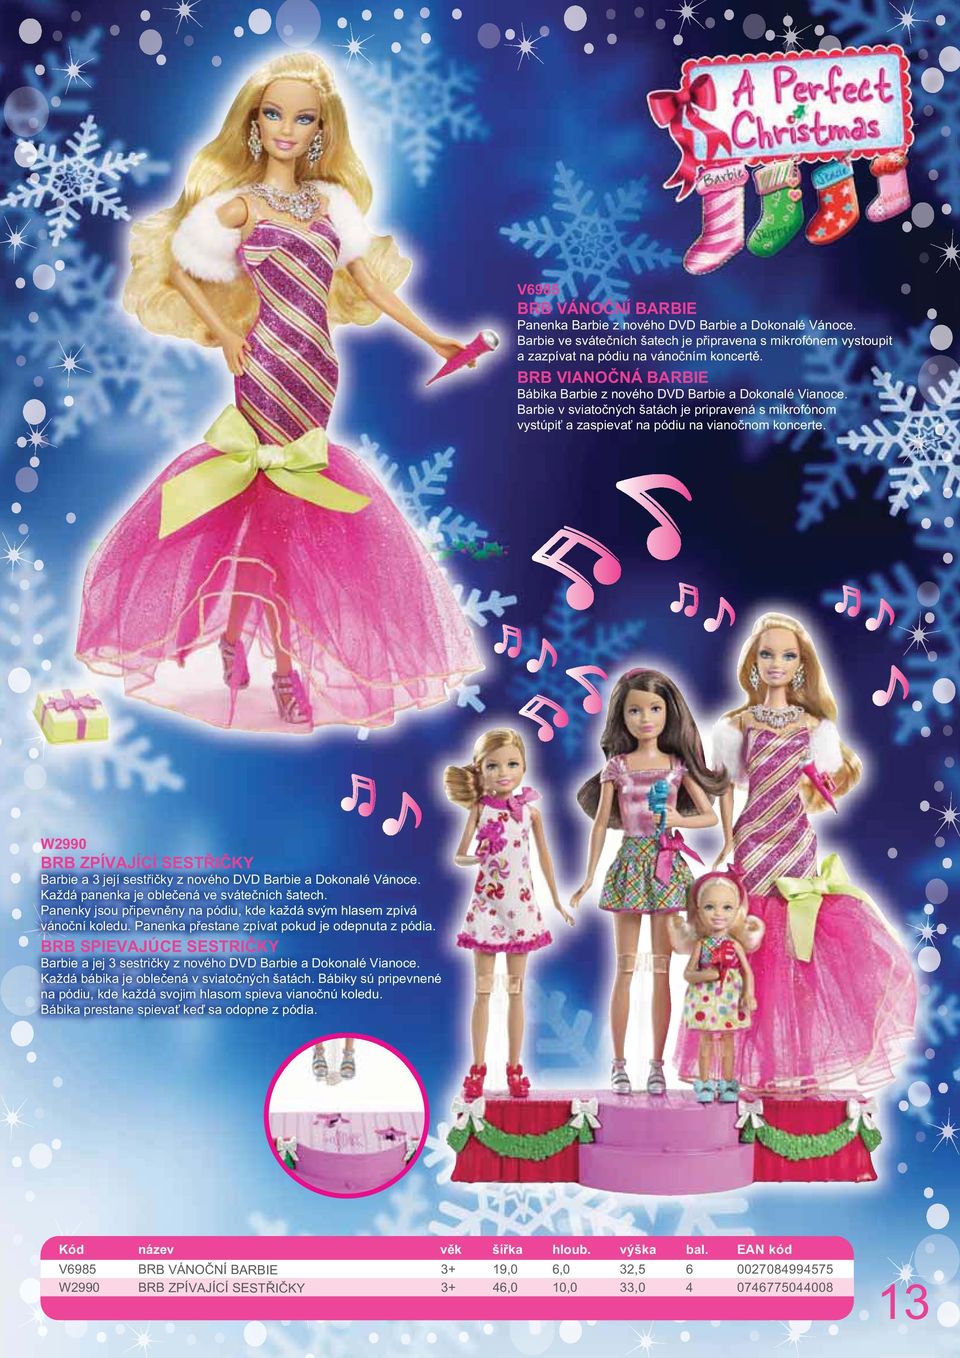 W2990 BRB ZPÍVAJÍCÍ SESTŘIČKY Barbie a 3 její sestřičky z nového DVD Barbie a Dokonalé Vánoce. Každá panenka je oblečená ve svátečních šatech.